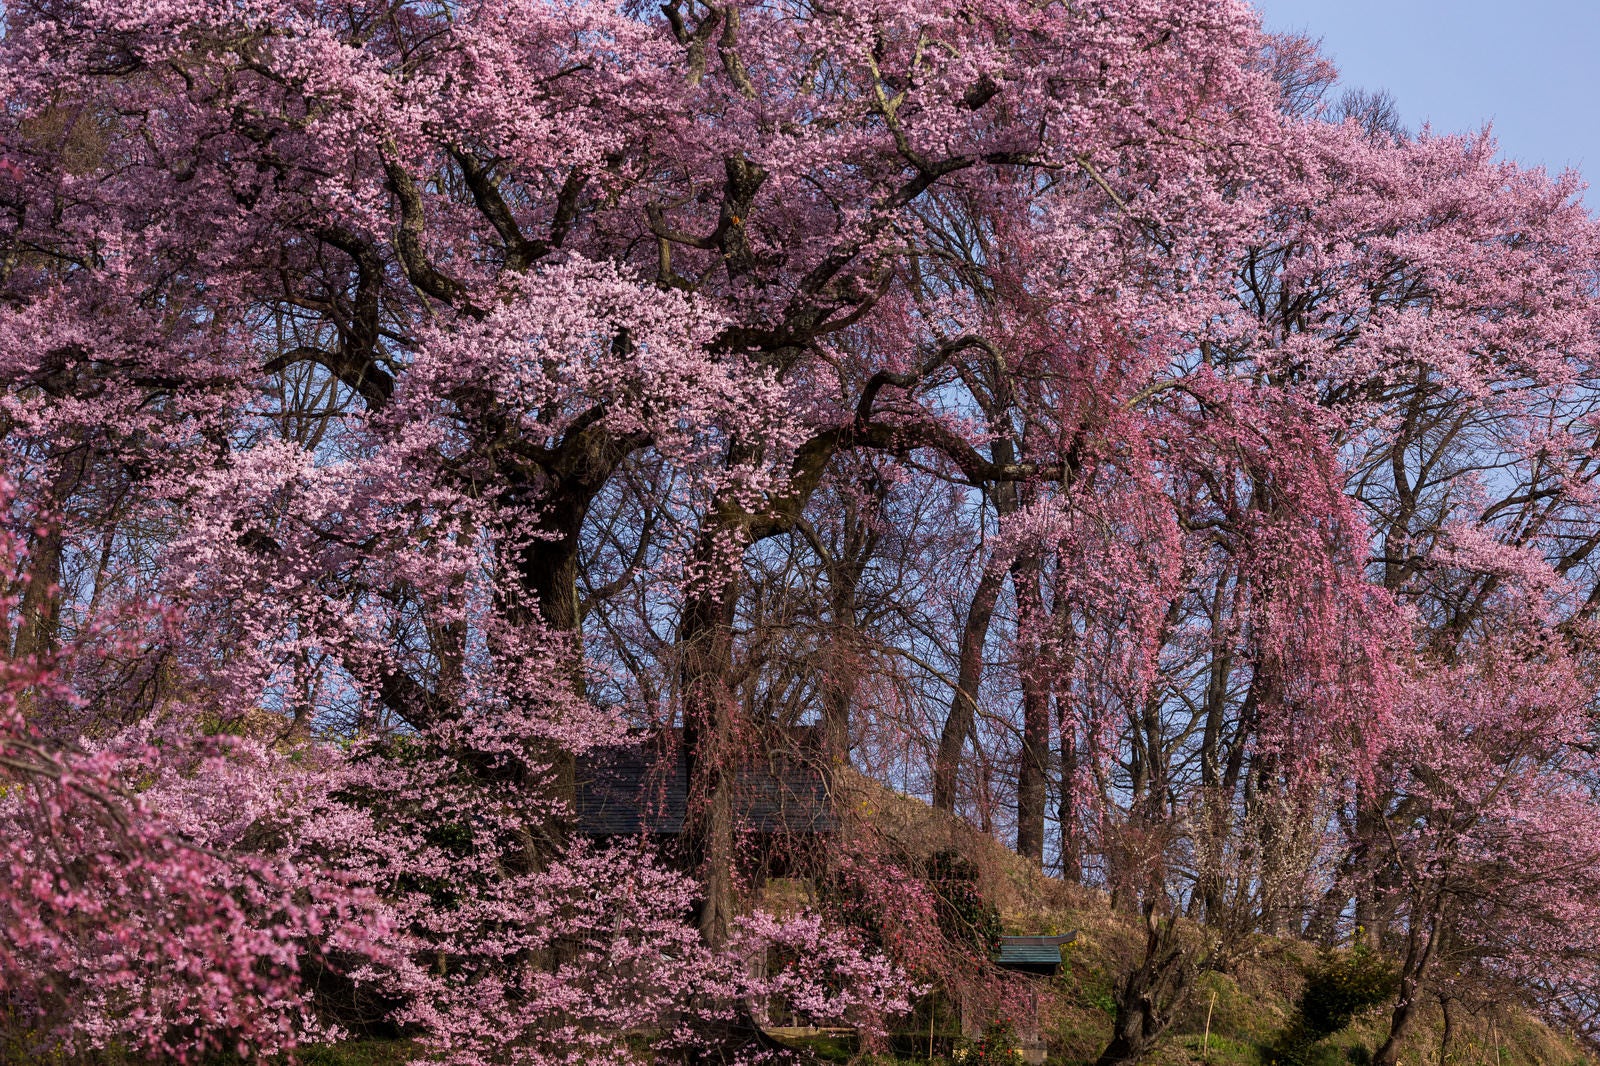 「二本の桜が夫婦のように寄り添き咲く「天神夫婦桜」」の写真